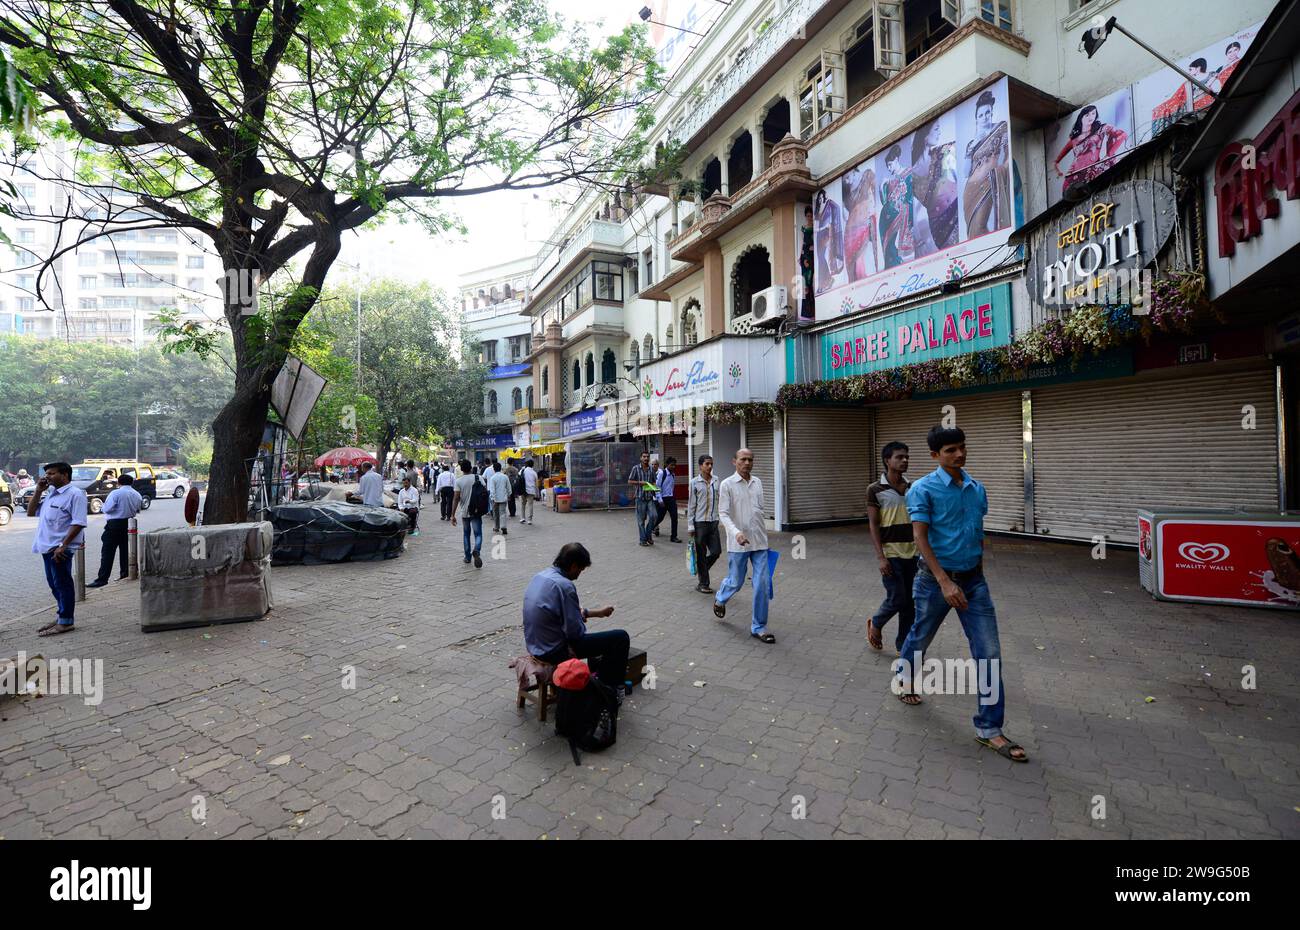 Marcher dans les rues de Dadar, Mumbai, Inde. Banque D'Images